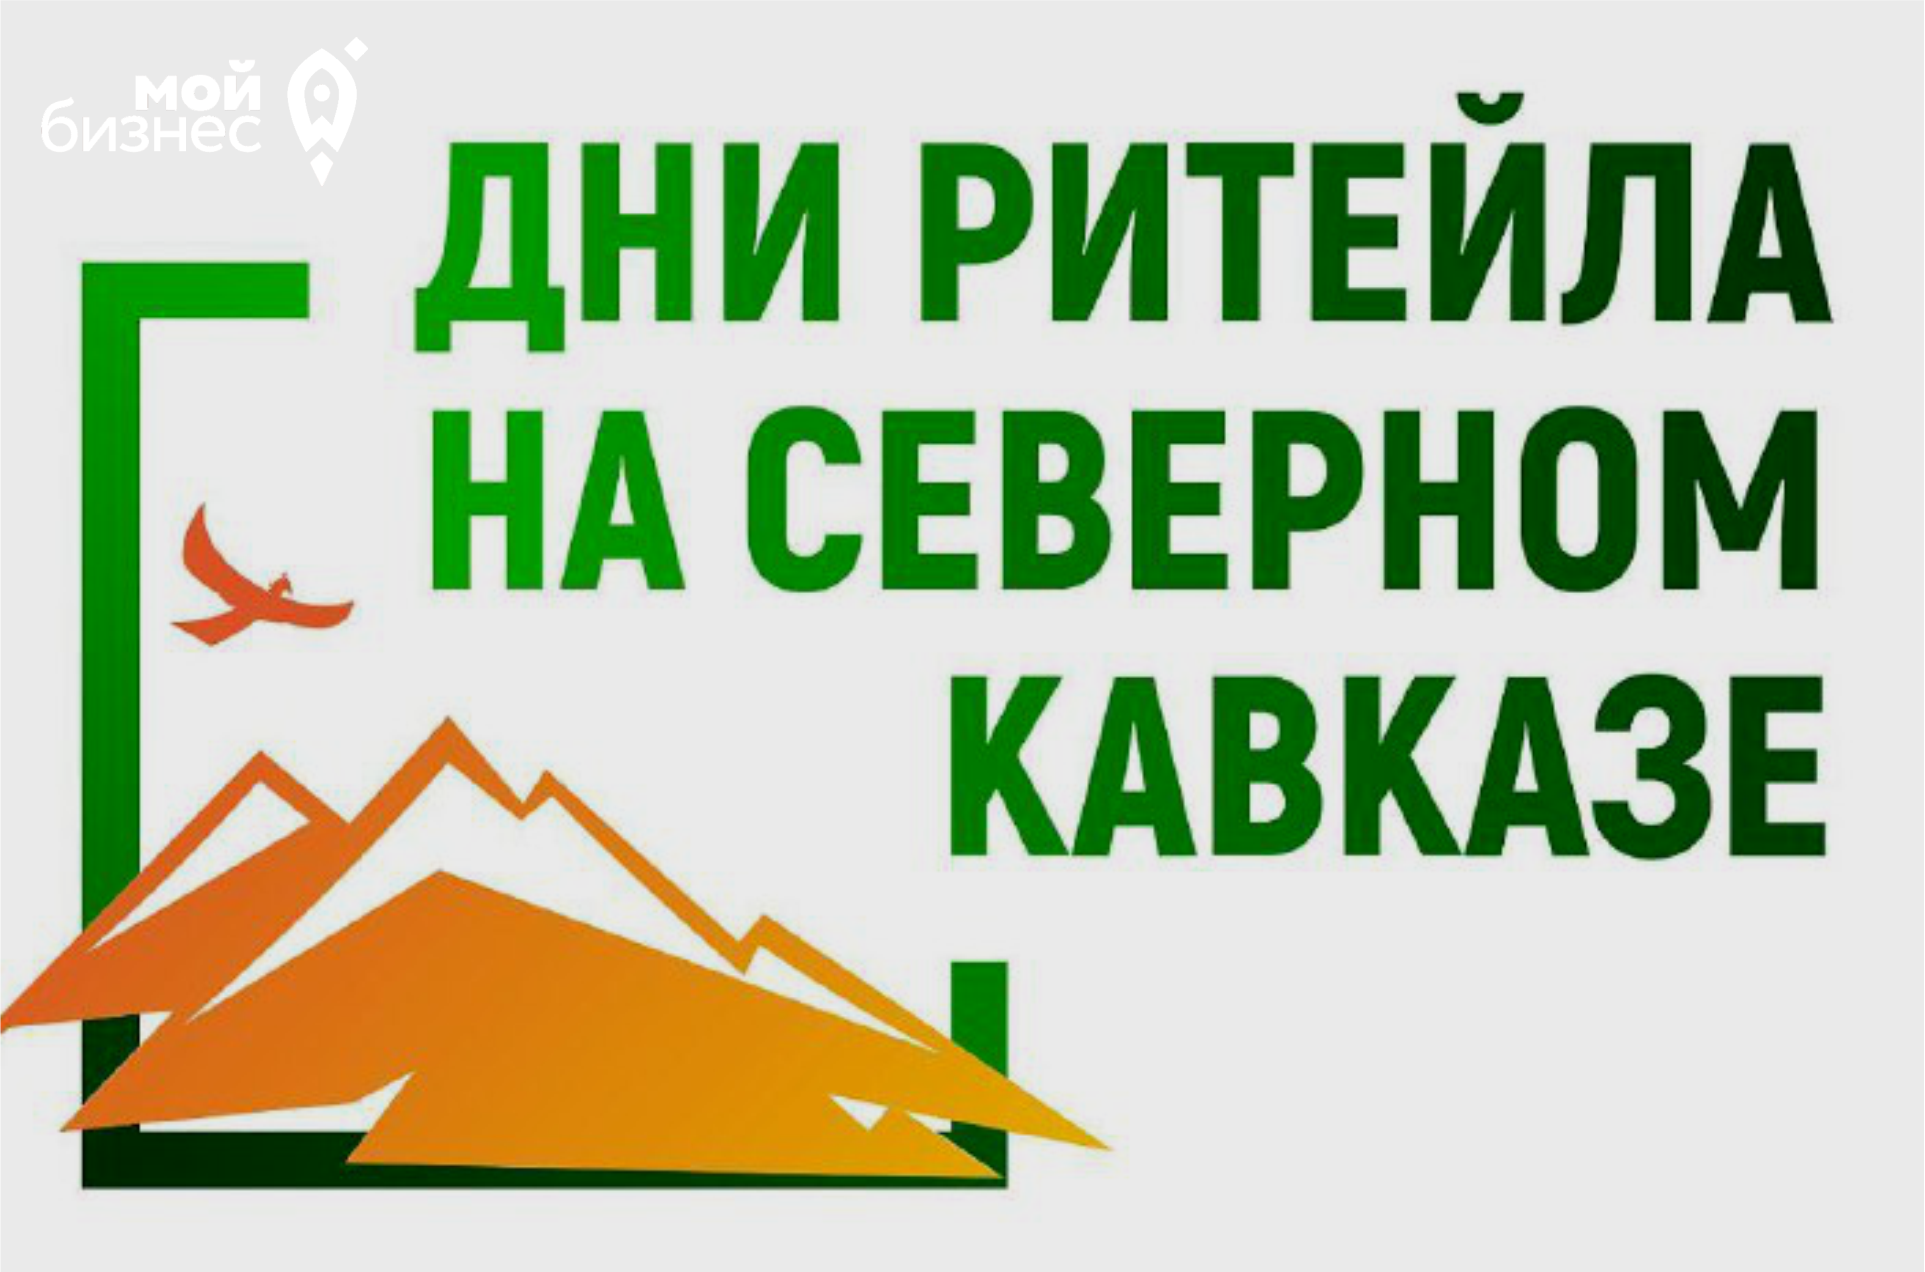 В Махачкале пройдет бизнес-форум "Дни Ритейла на Северном Кавказе"